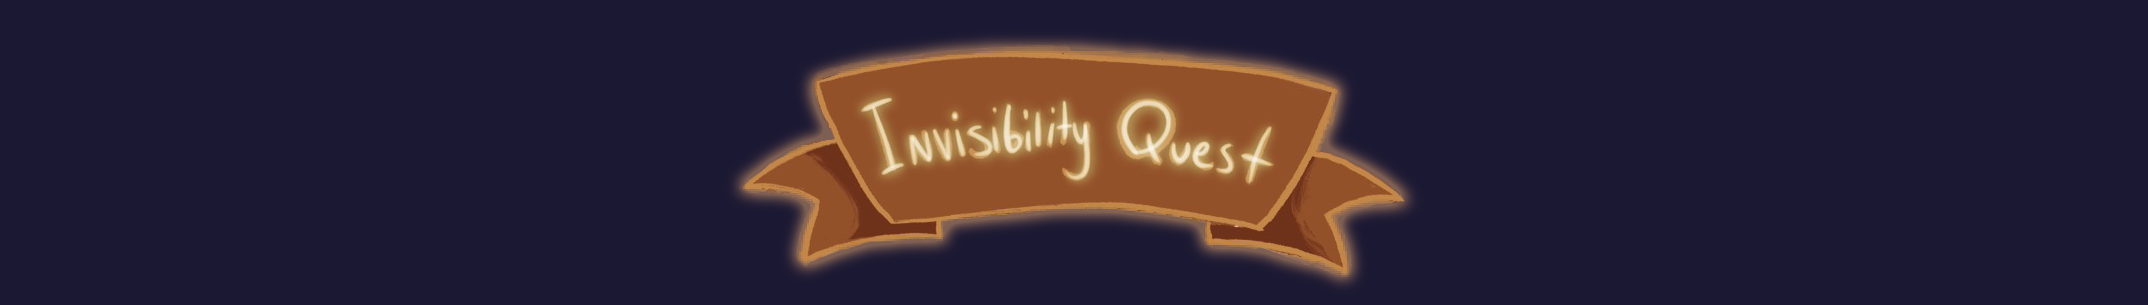 Invisibility Quest